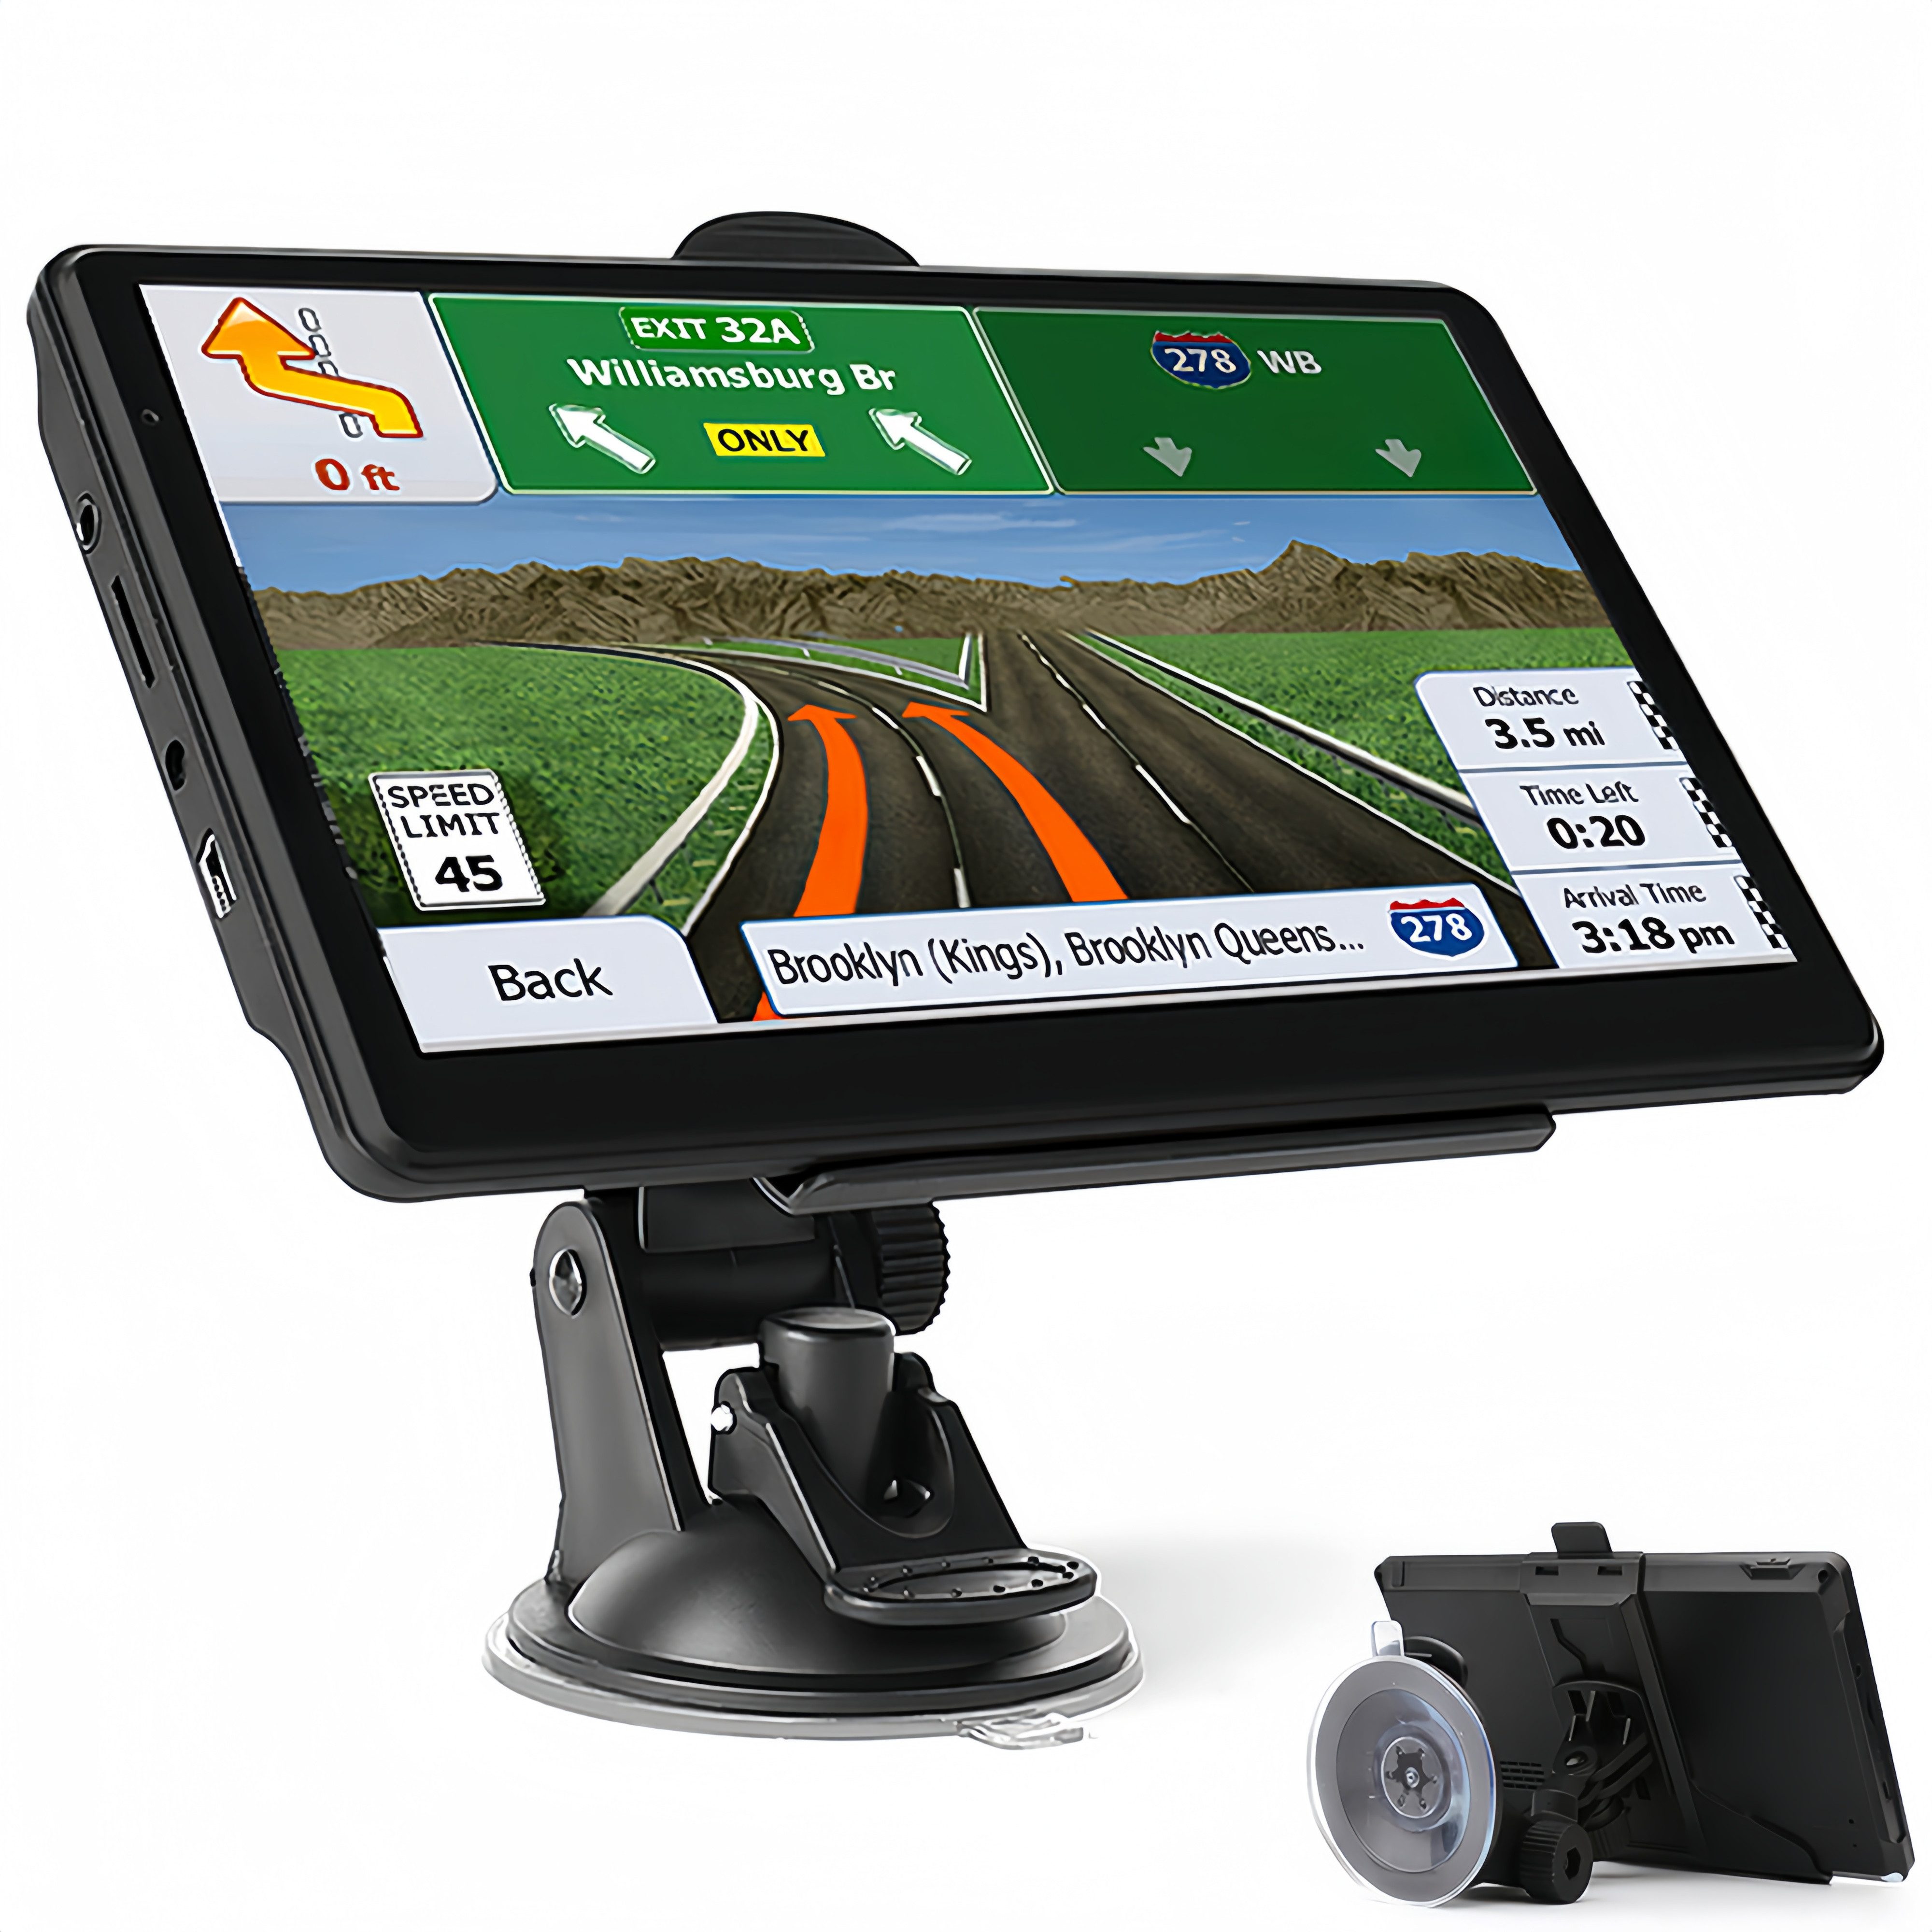 BlingBin 7 Zoll HD Europakarte Autonavigator GPS Navigation mit Karten-Updates PKW-Navigationsgerät (Europakarte, Karten-Updates, Mit Autoradio, RAM 8G+256M, KFZ LKW TFT-Touchscreen-Navigation 2D/3D)